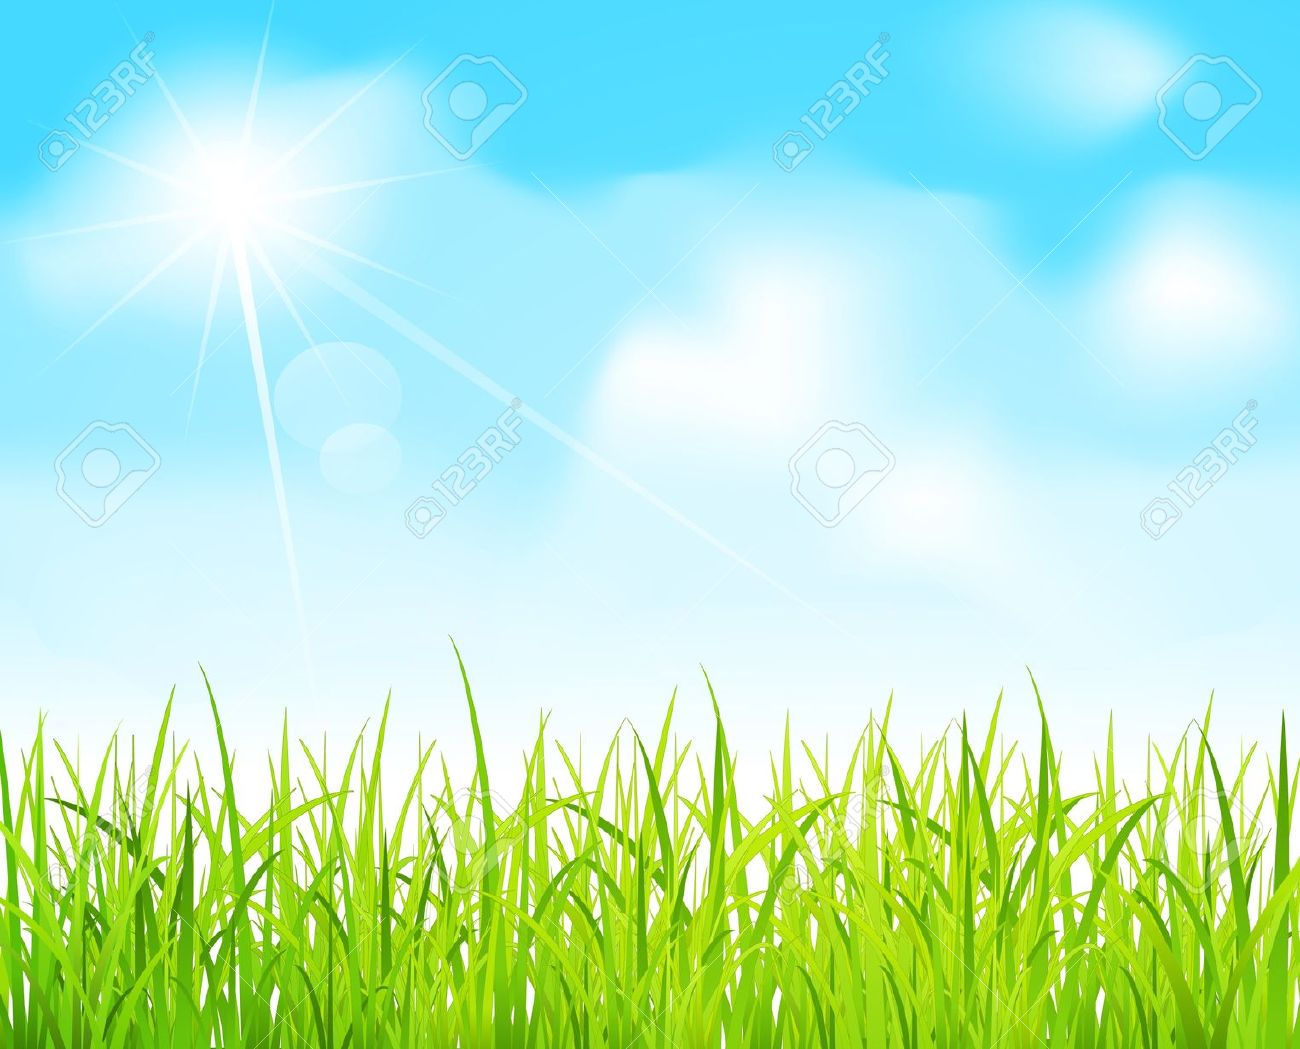 field clipart cloud grass background